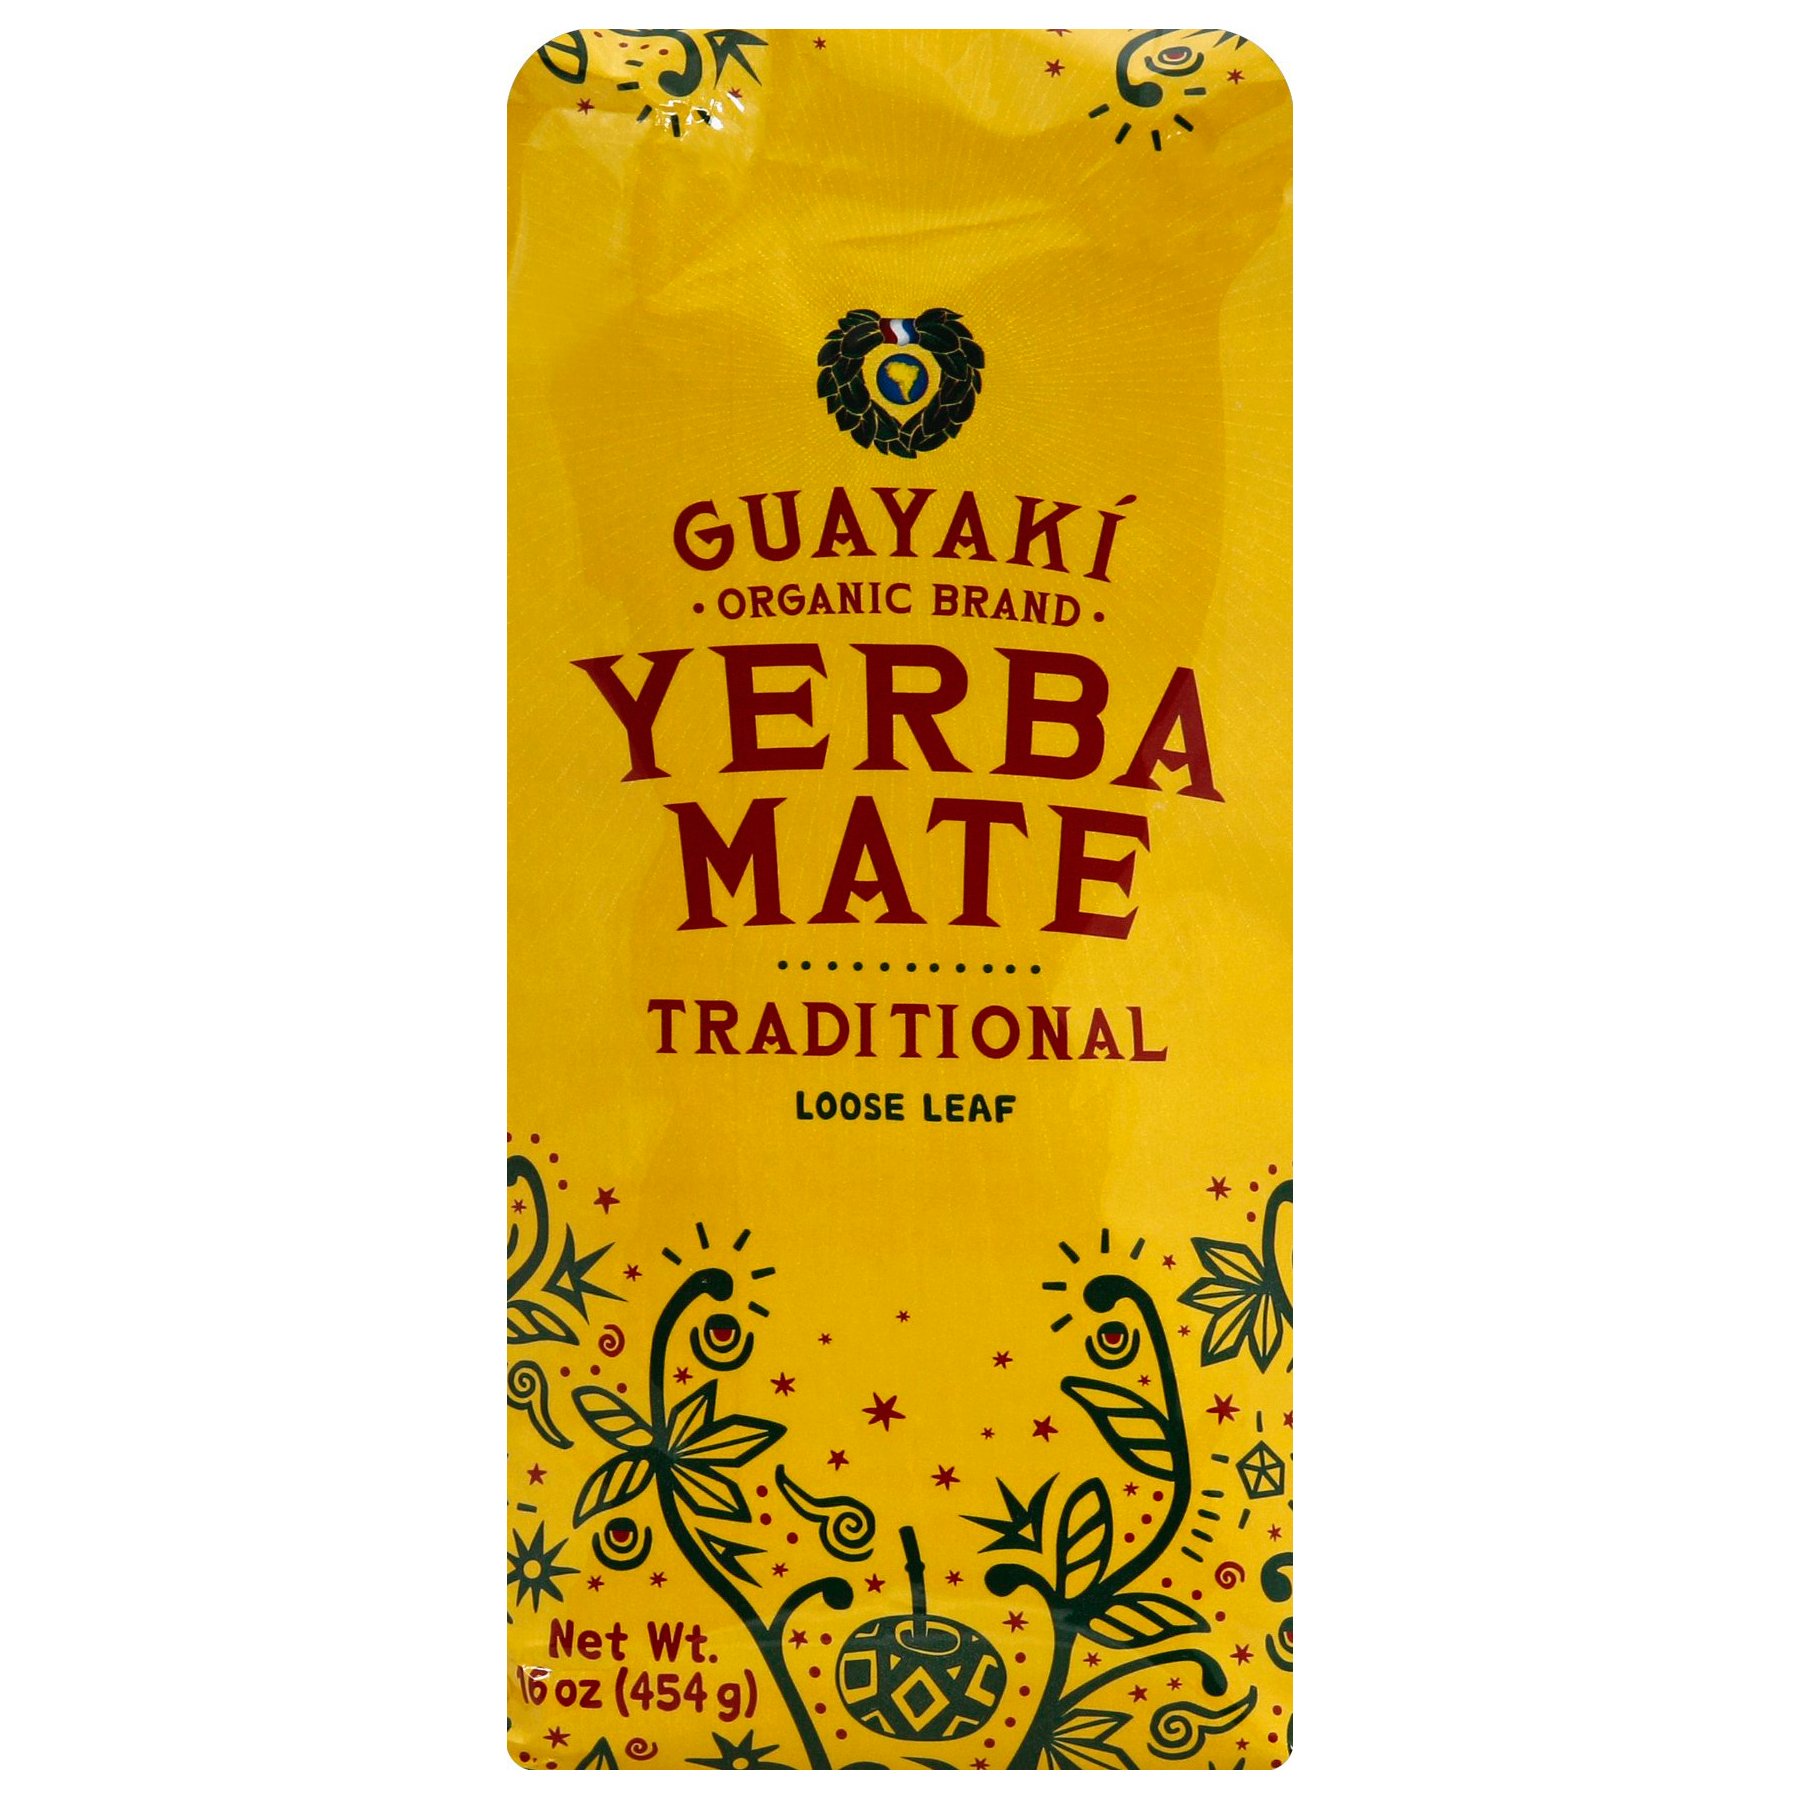 Guayaki Yerba Mate Enlighten Mint High Energy Drink - Shop Tea at H-E-B